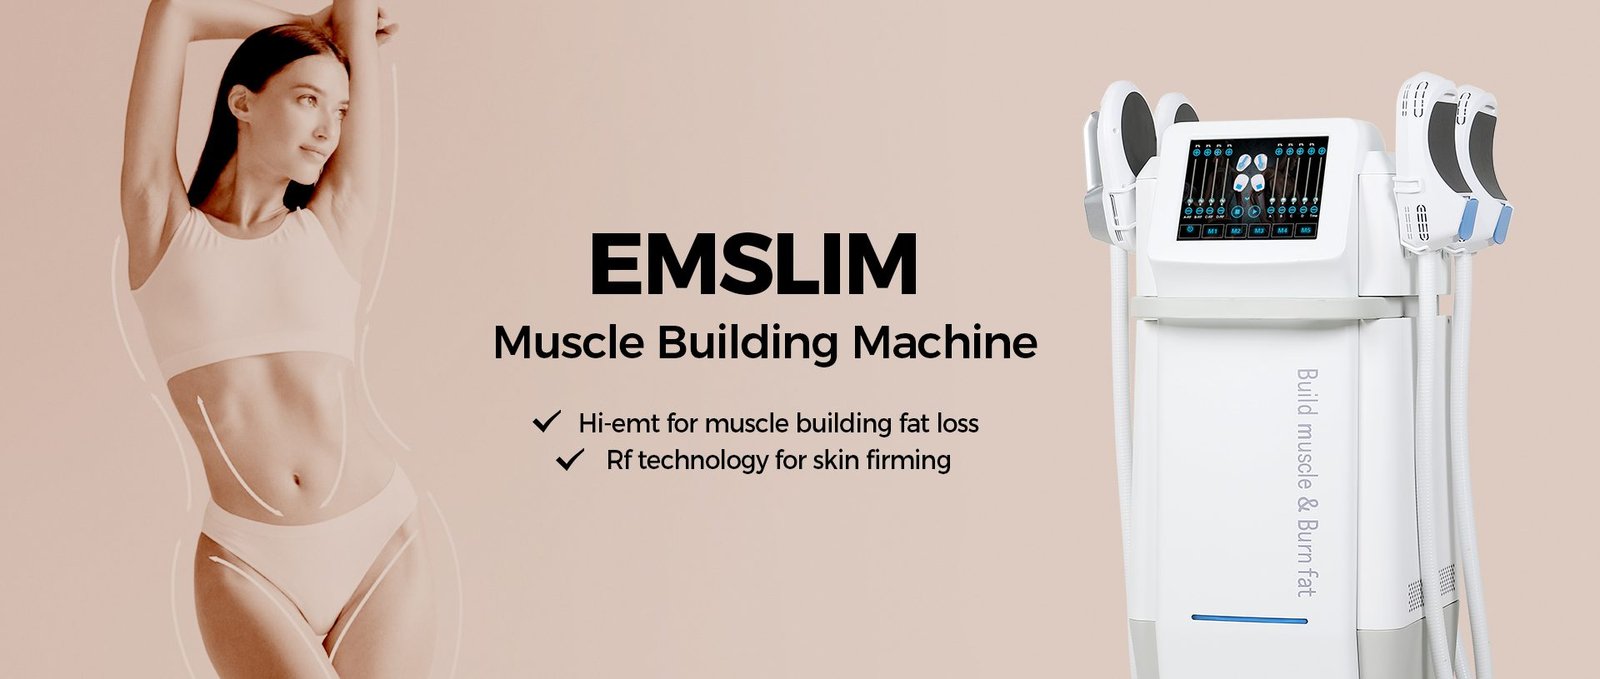 emslim machine 4 handles